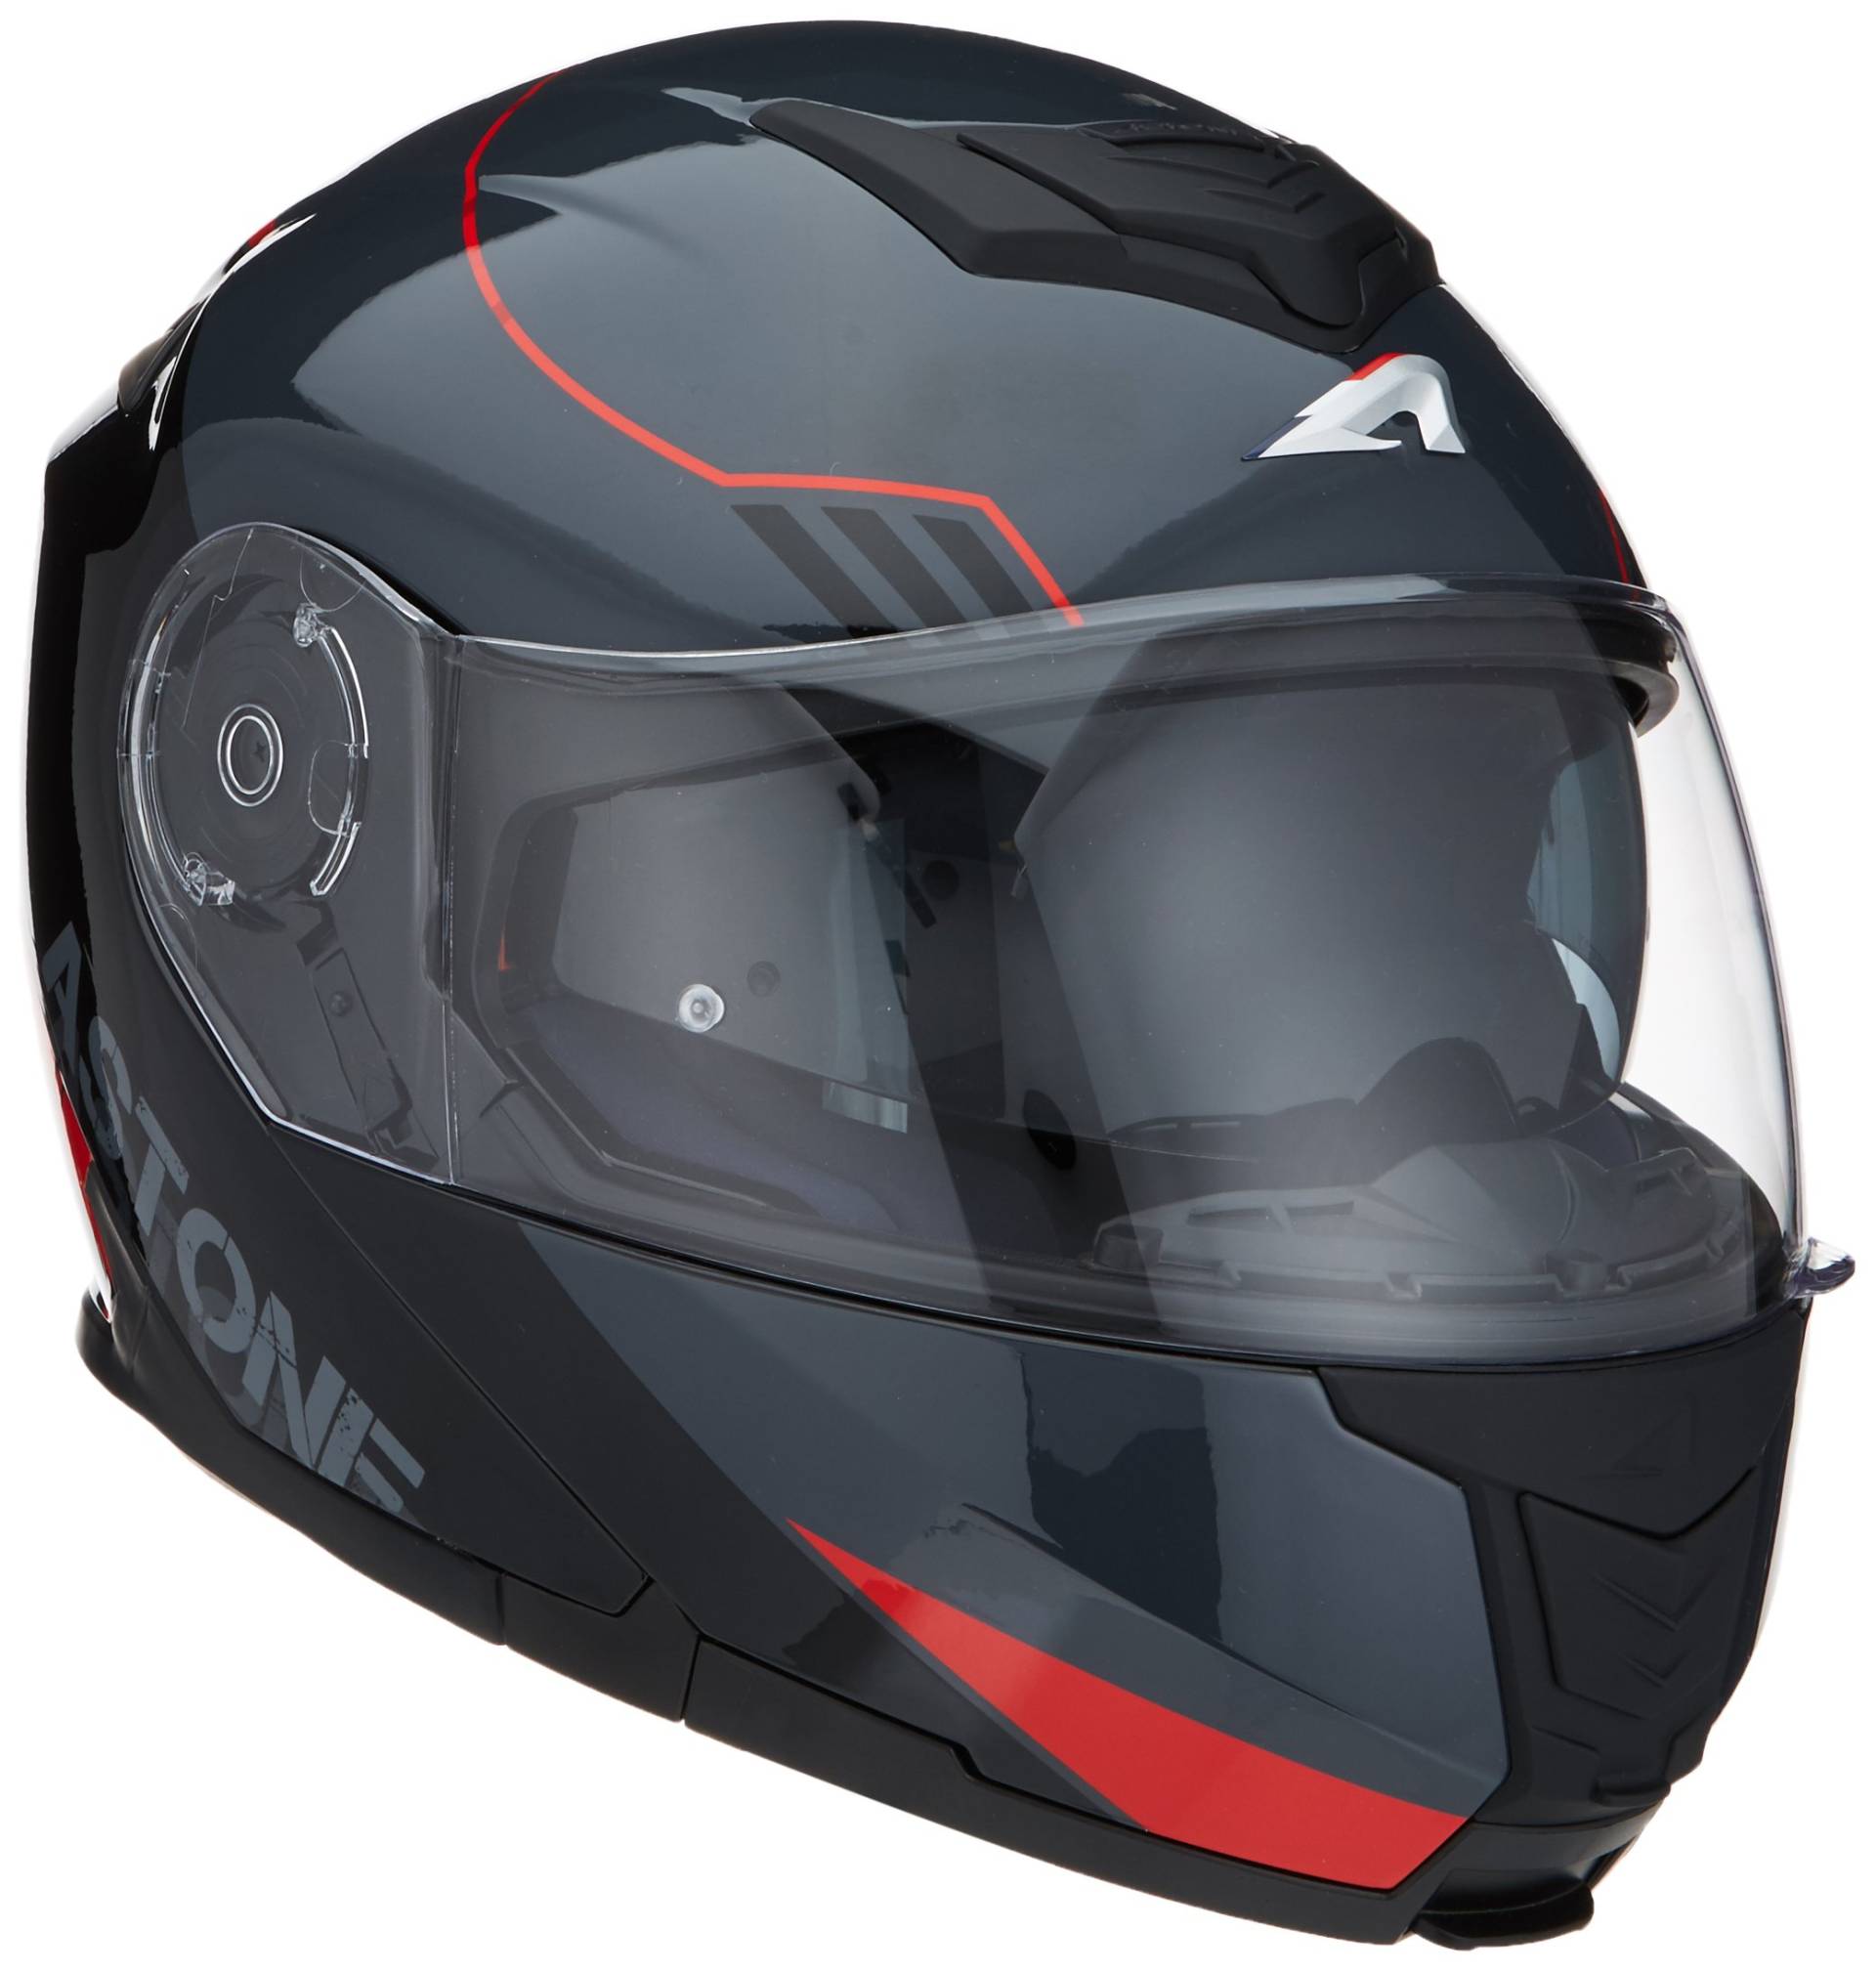 Astone Helmets - RT1200 Graphic UPLINE - Casque de moto modulable - Casque de moto polyvalent - Casque de moto homologué - Coque en polycarbonate red/grey XL von Astone Helmets